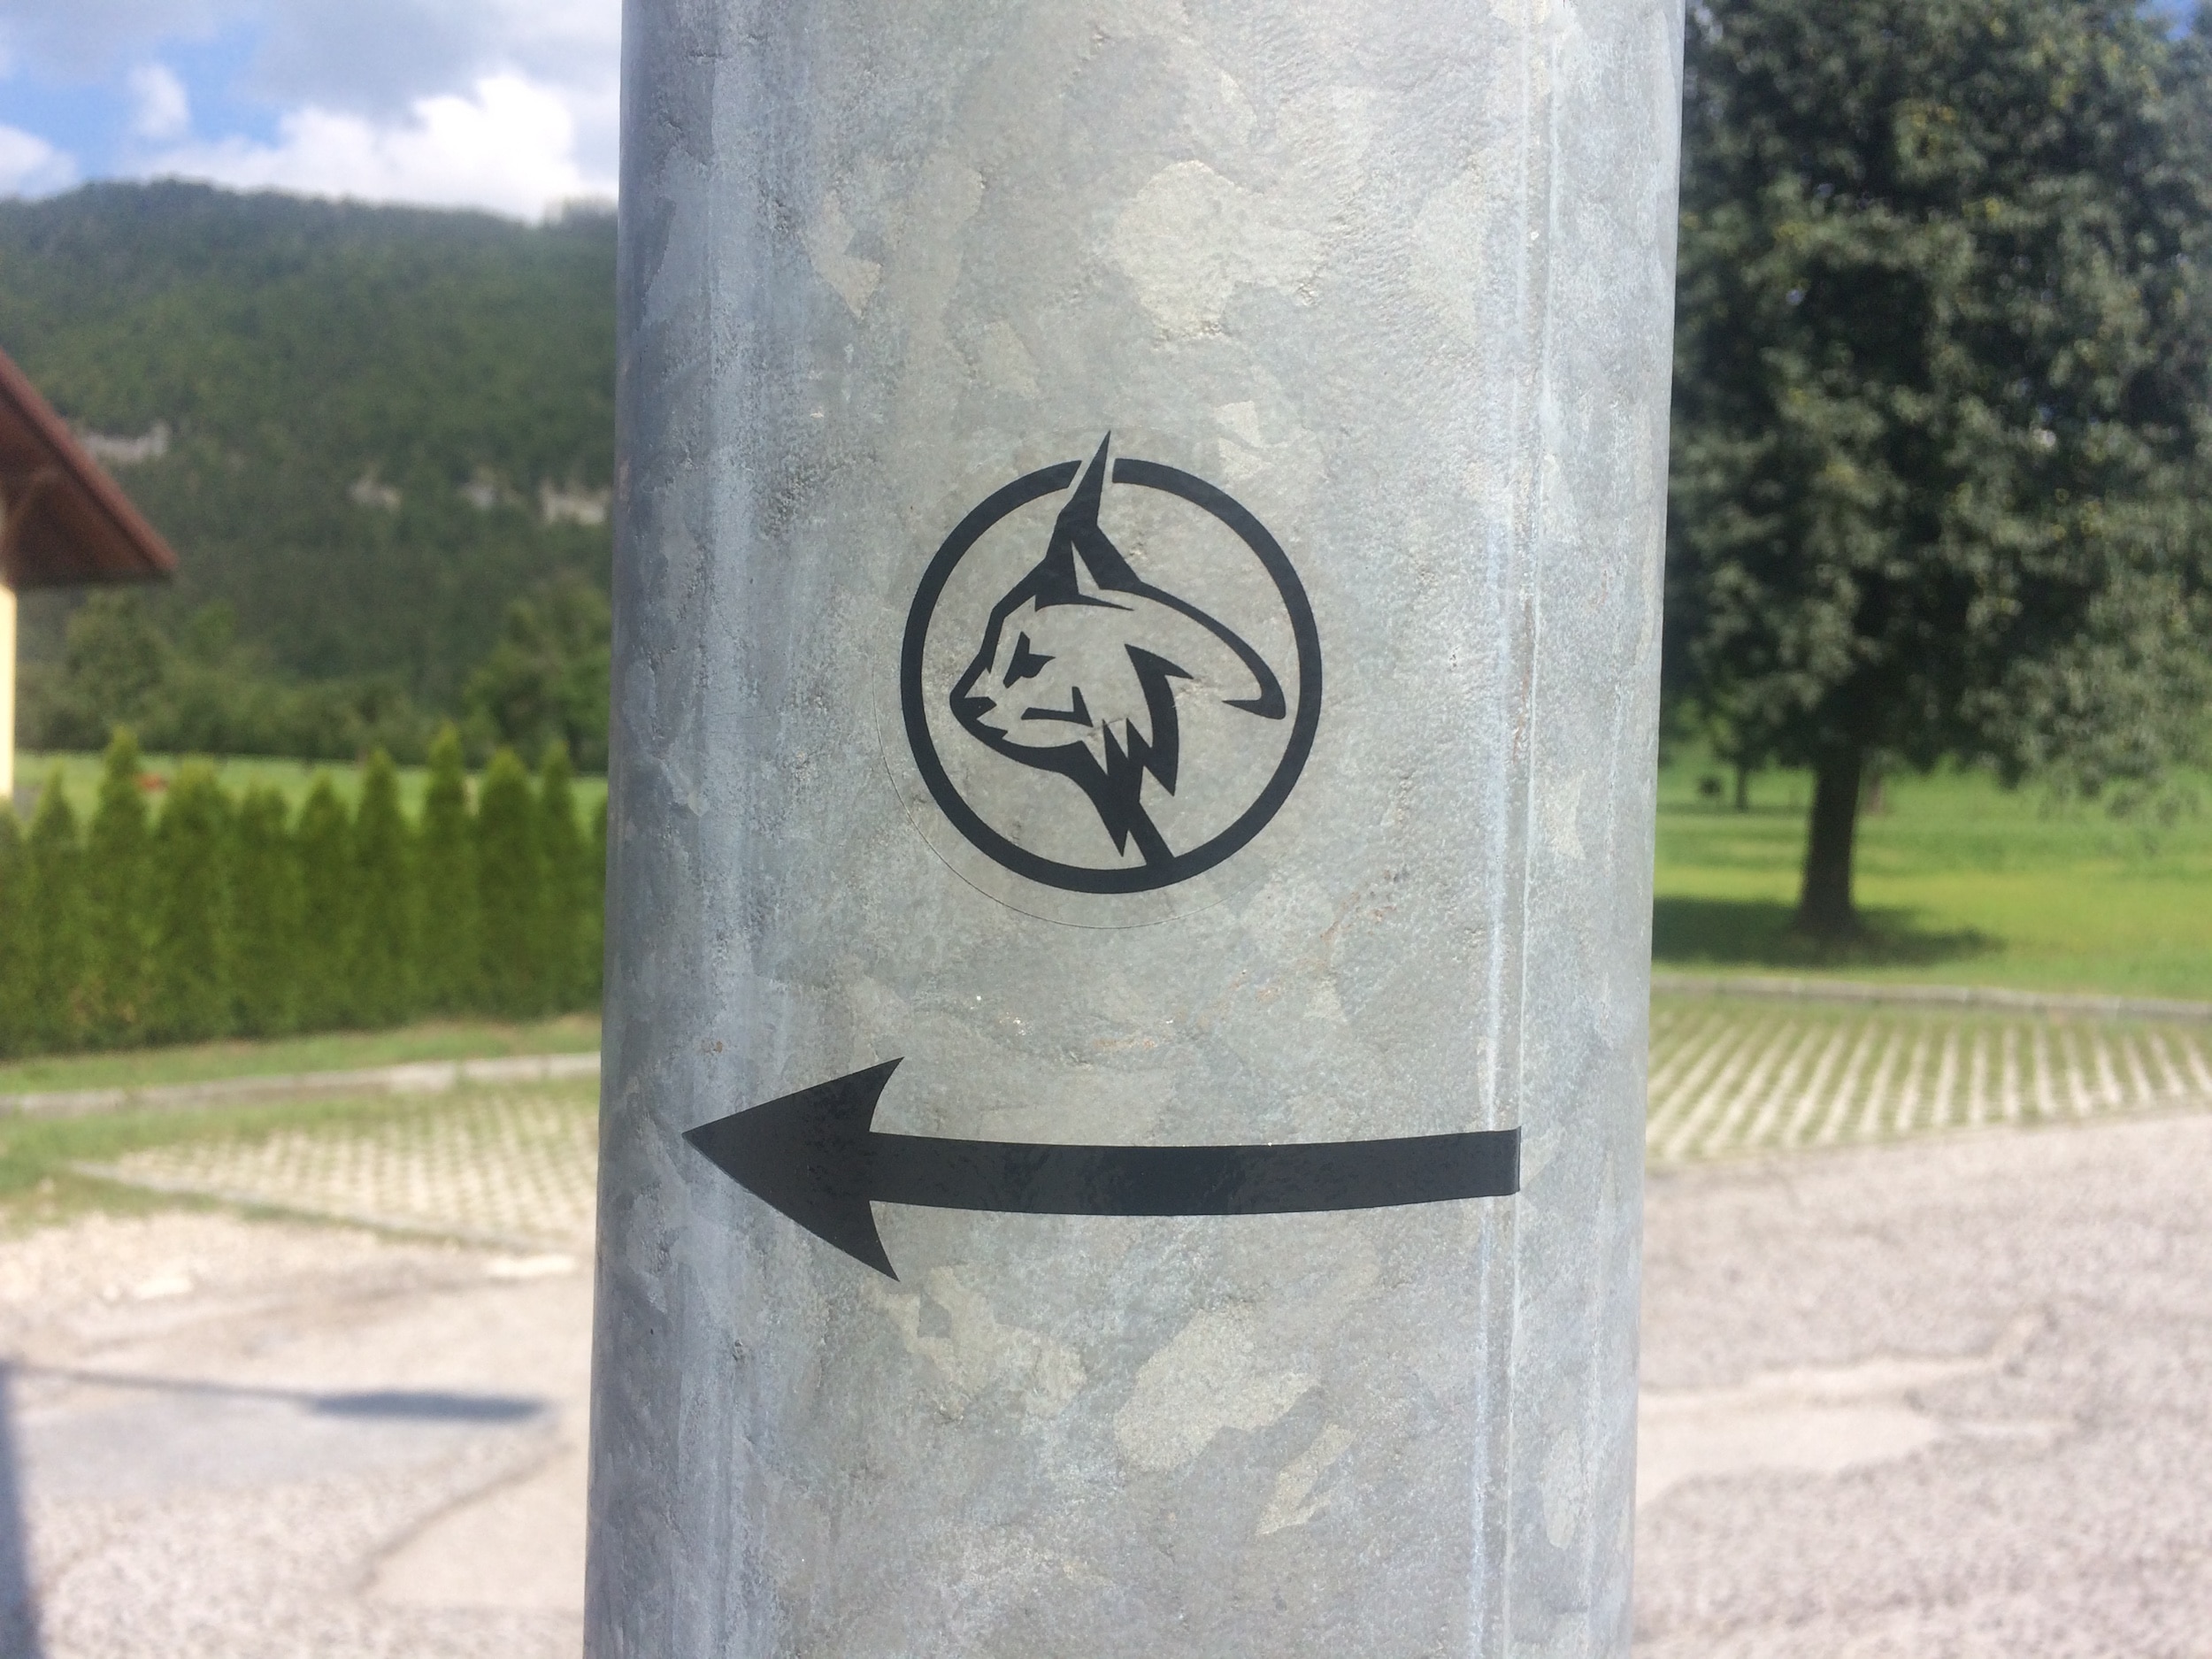 Luchssymbol mit Pfeil an Metallpfosten